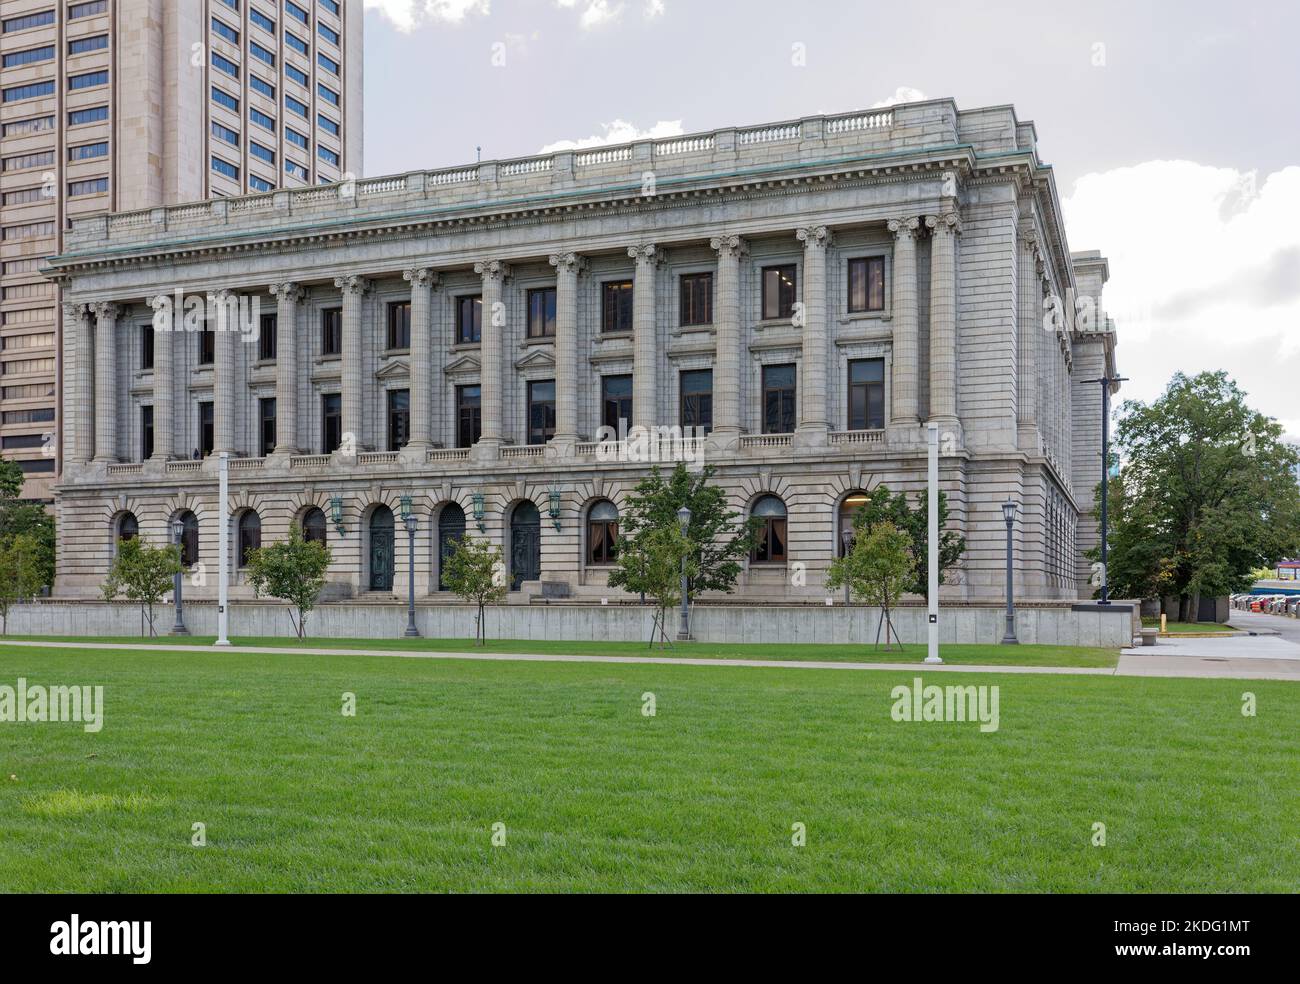 Das Cuyahoga County Court House ist ein visueller Zwilling des Cleveland City Hall, zwei Blocks östlich an der Lakeside Avenue. Stockfoto